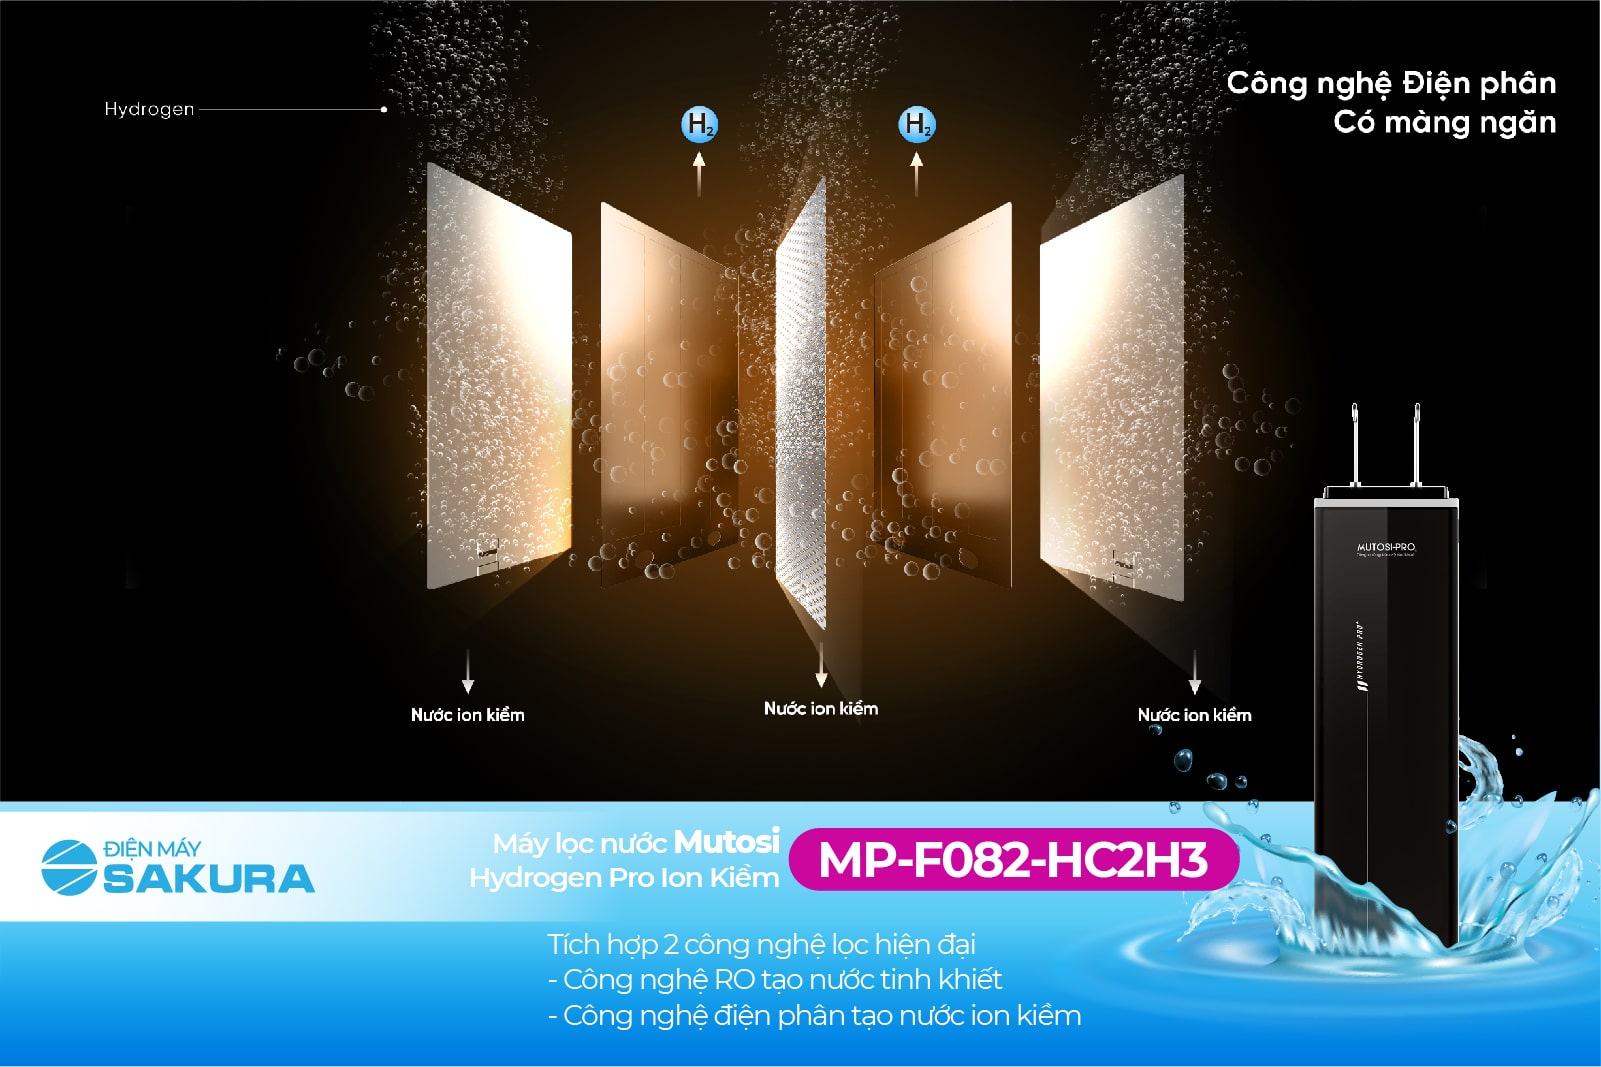 Máy lọc nước Mutosi Hydrogen MP-F082-HC2H3 kết hợp 2 công nghệ lọc nước hiện đại 